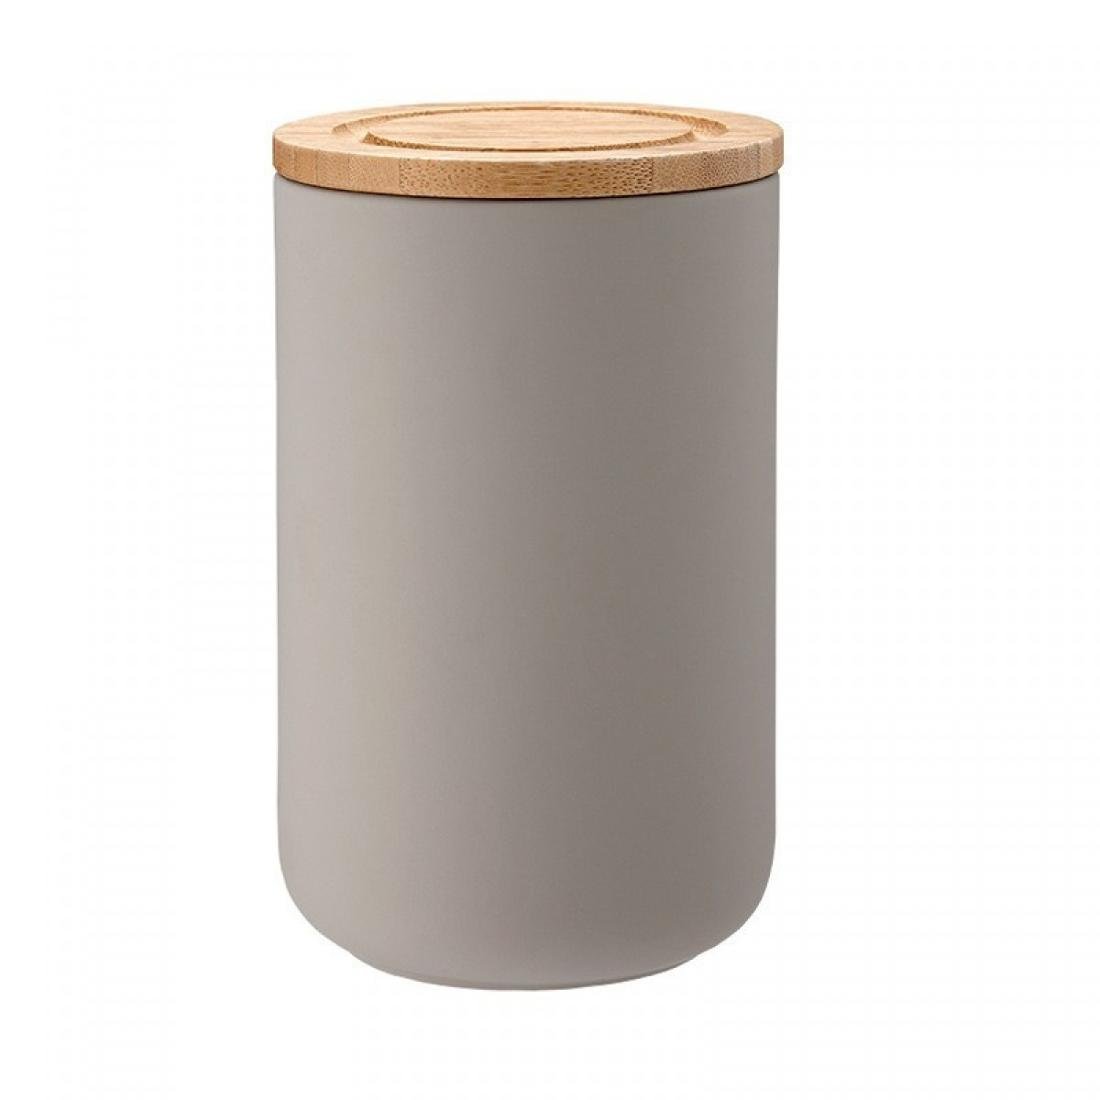 Zdjęcia - Pojemnik na żywność Pojemnik Ceramiczny LADELLE Stak Soft Matt, beżowy, 10x17 cm